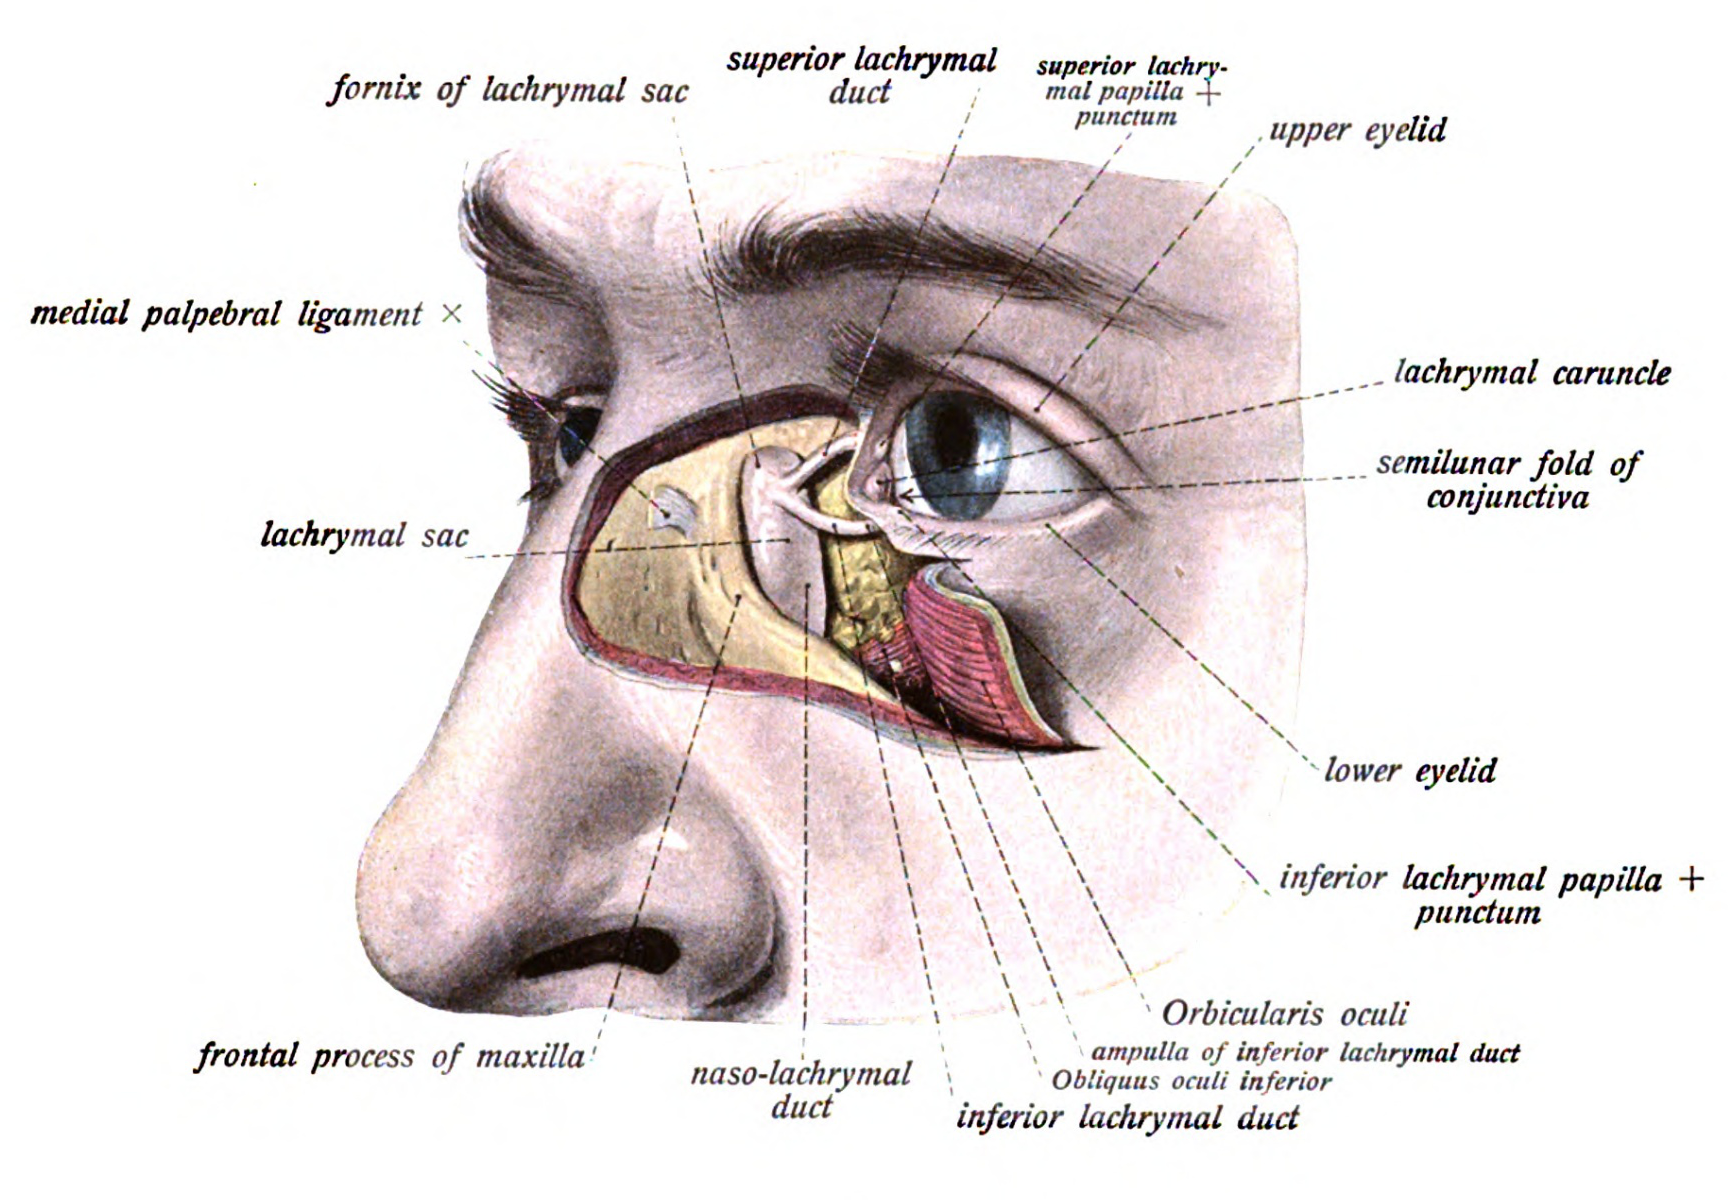 M obliquus inferior глаза